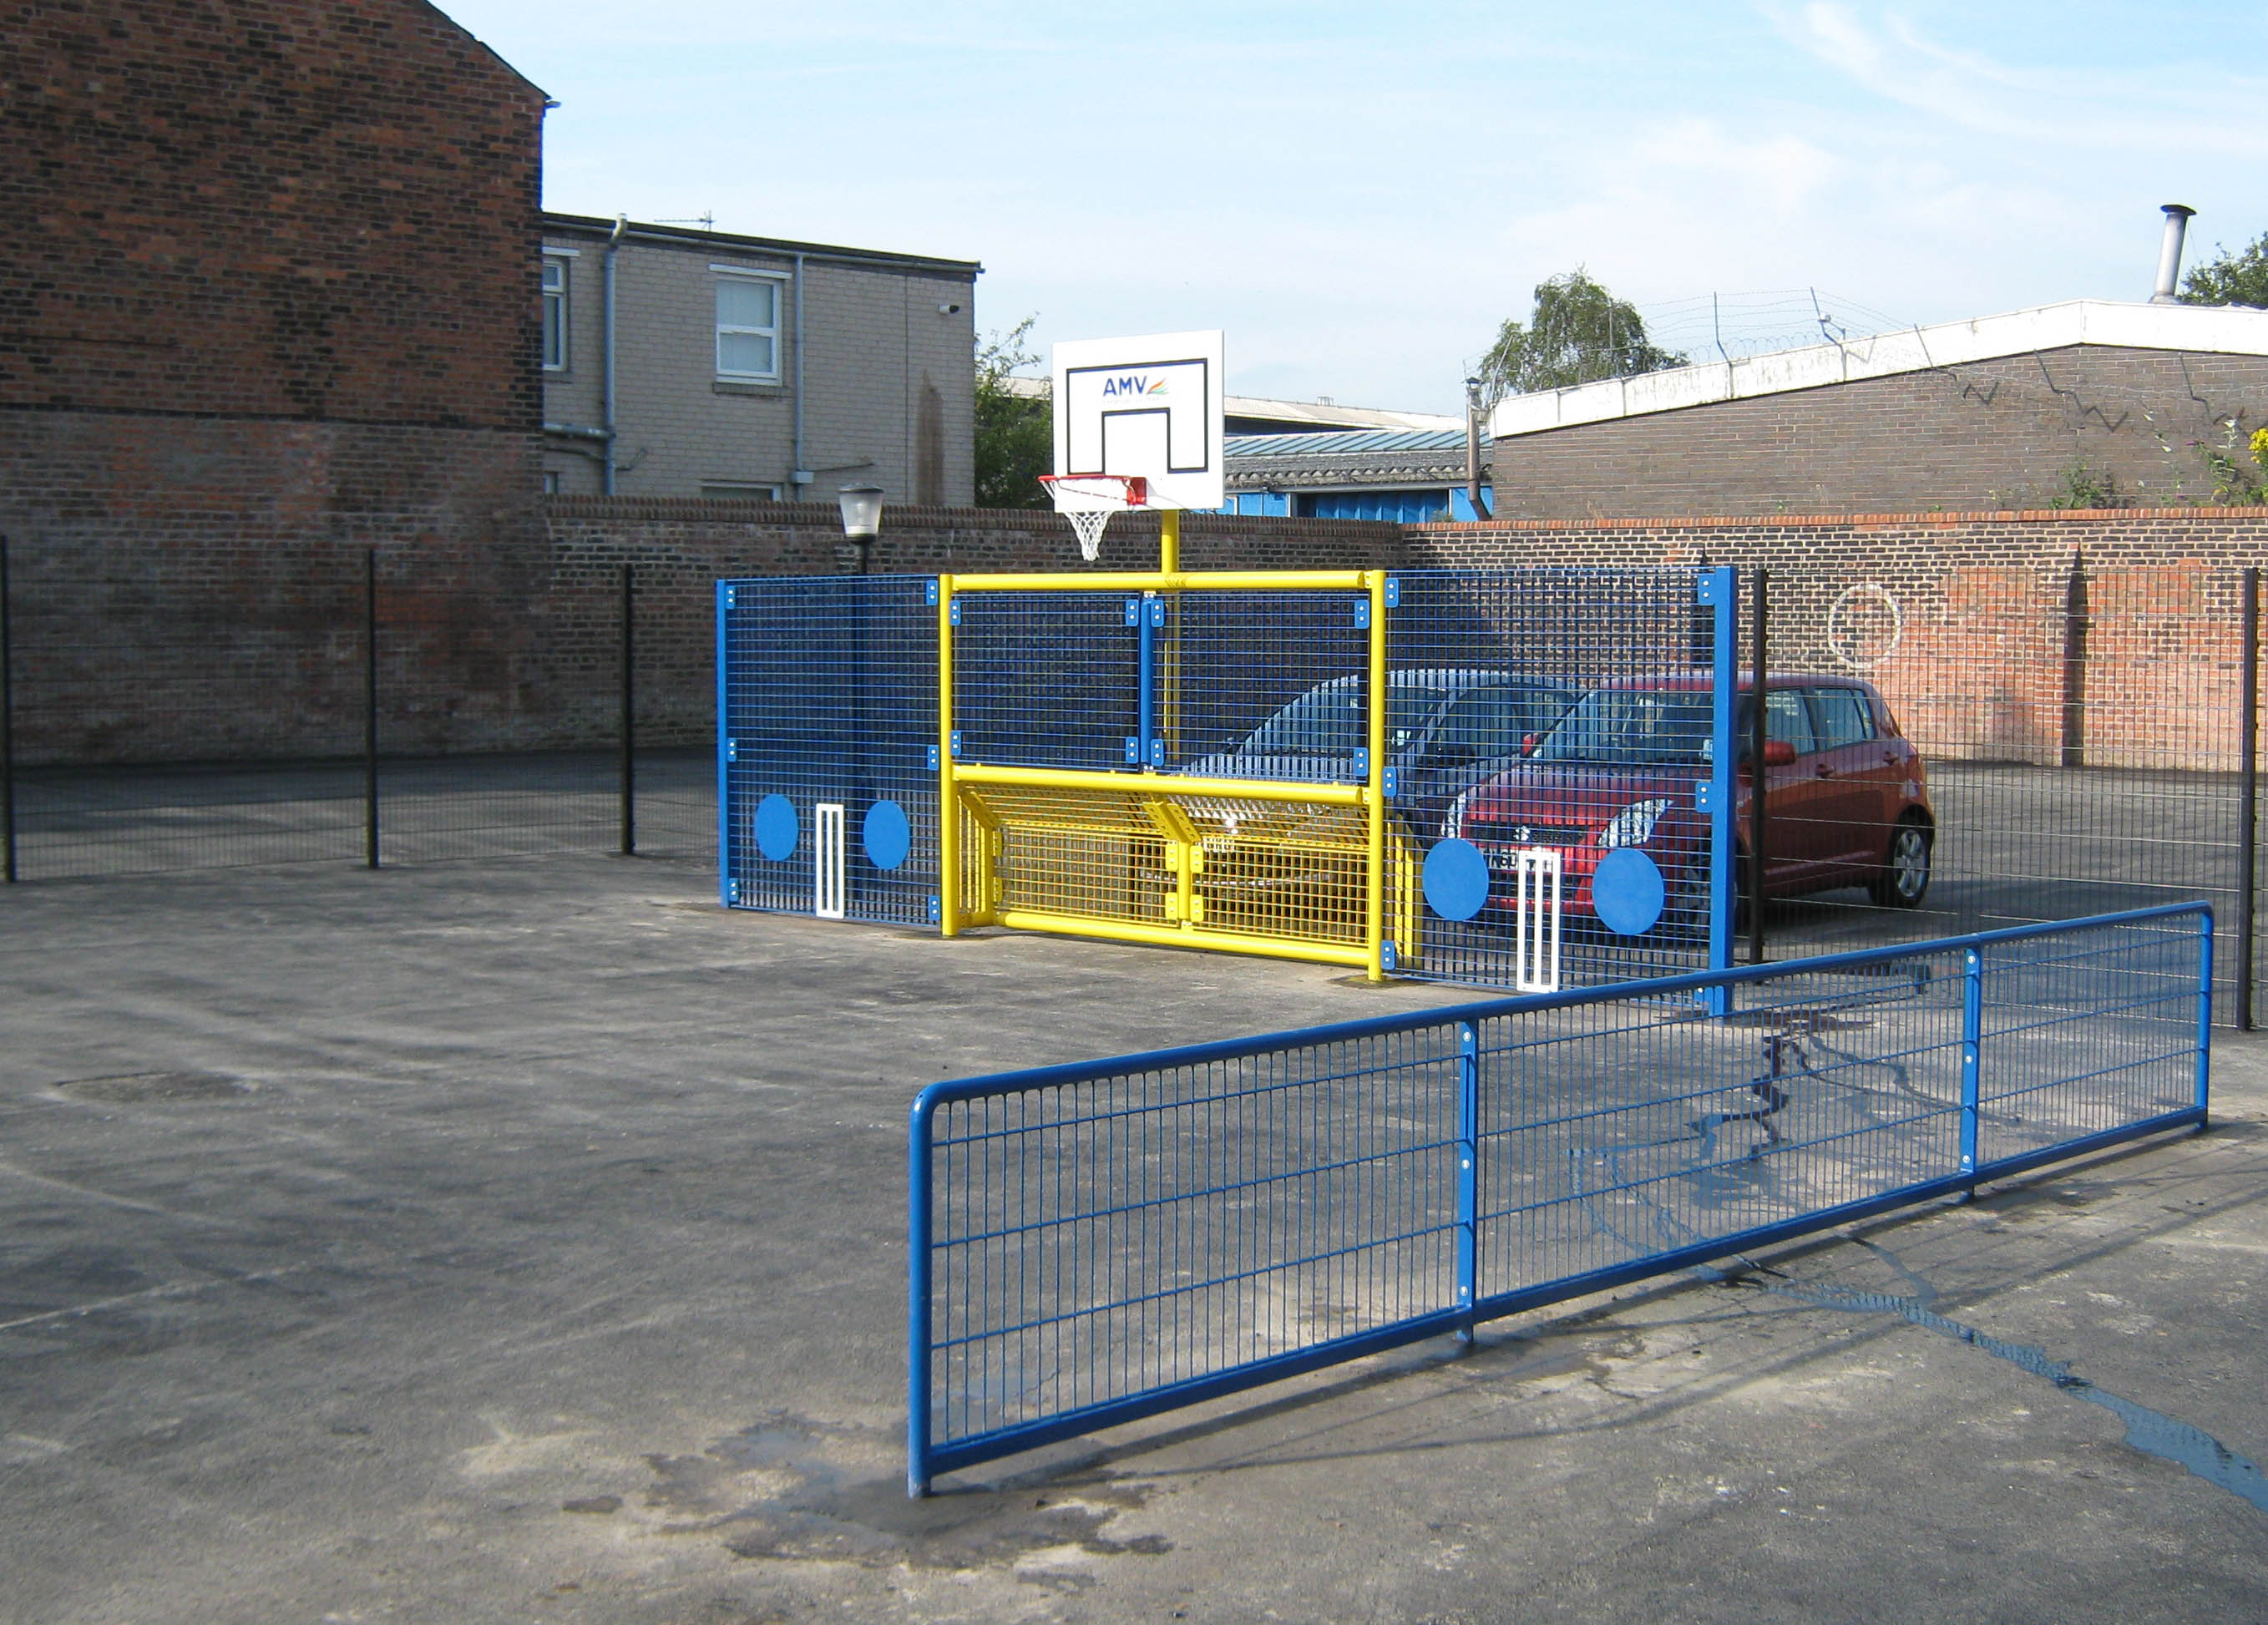 School Playground Development in Summer Holidays